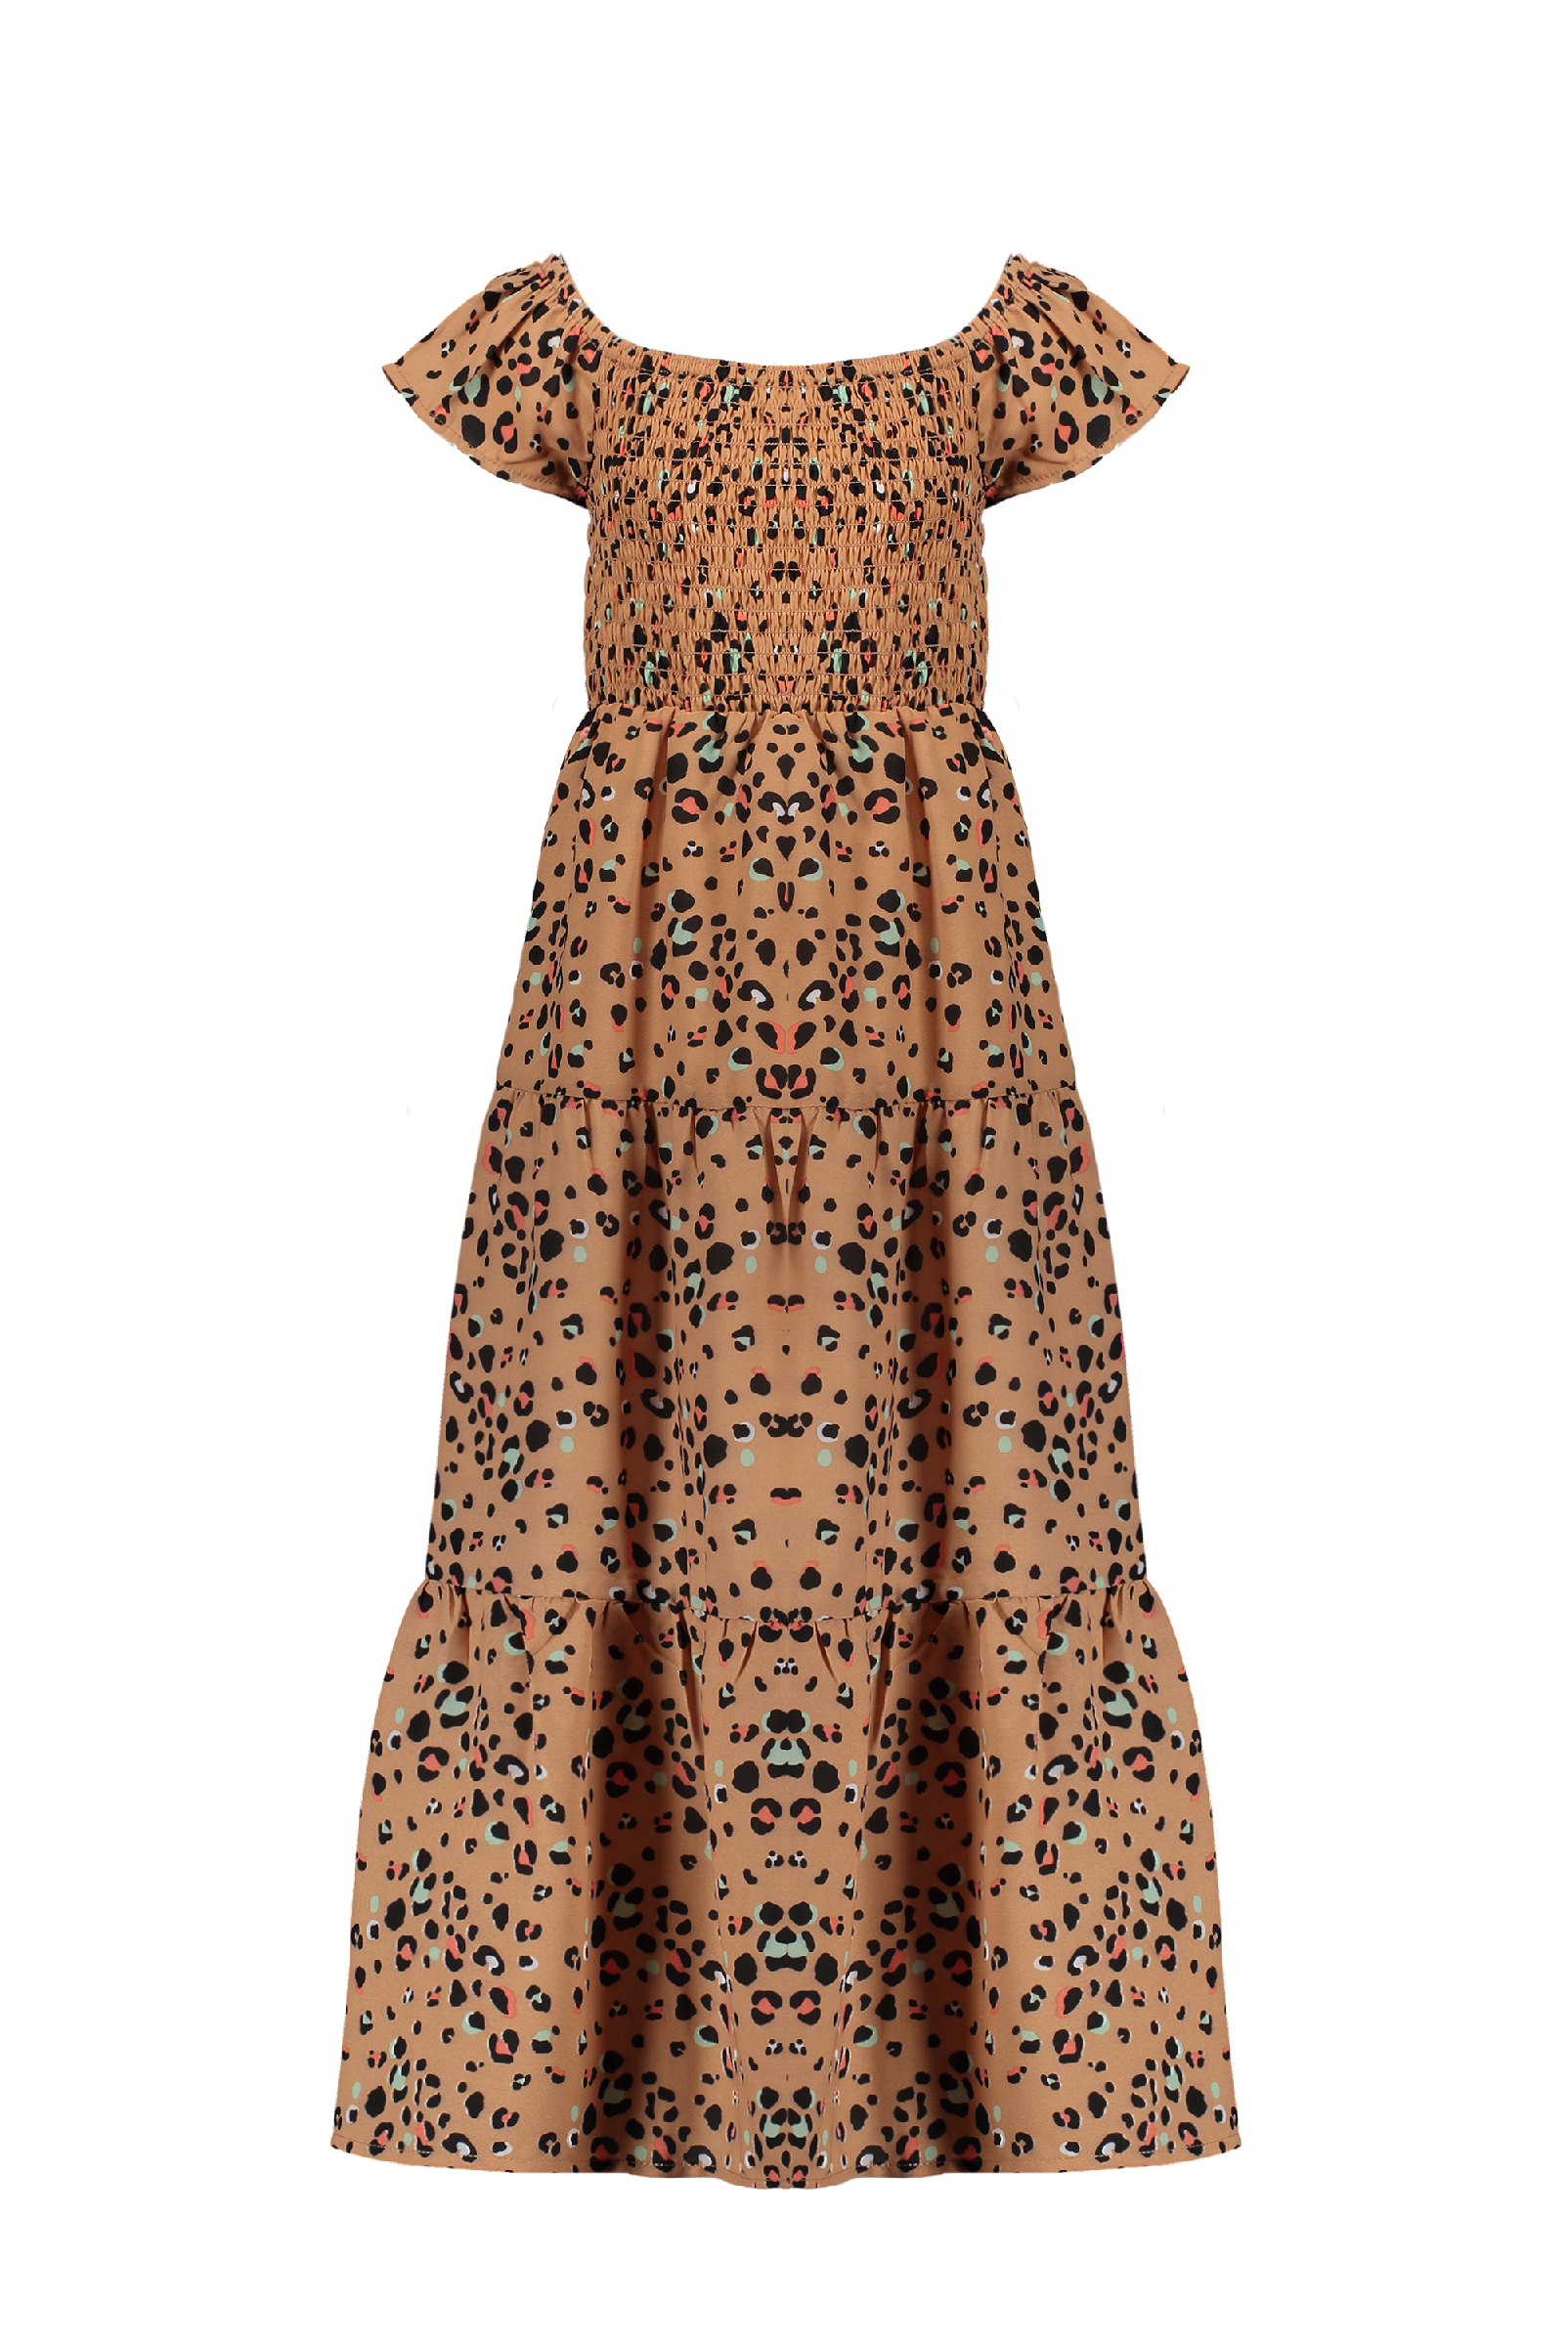 Meisjes Malia AOP multi animal smock long, cold shldr dress van NoNo in de kleur Hazelnut in maat 146, 152.